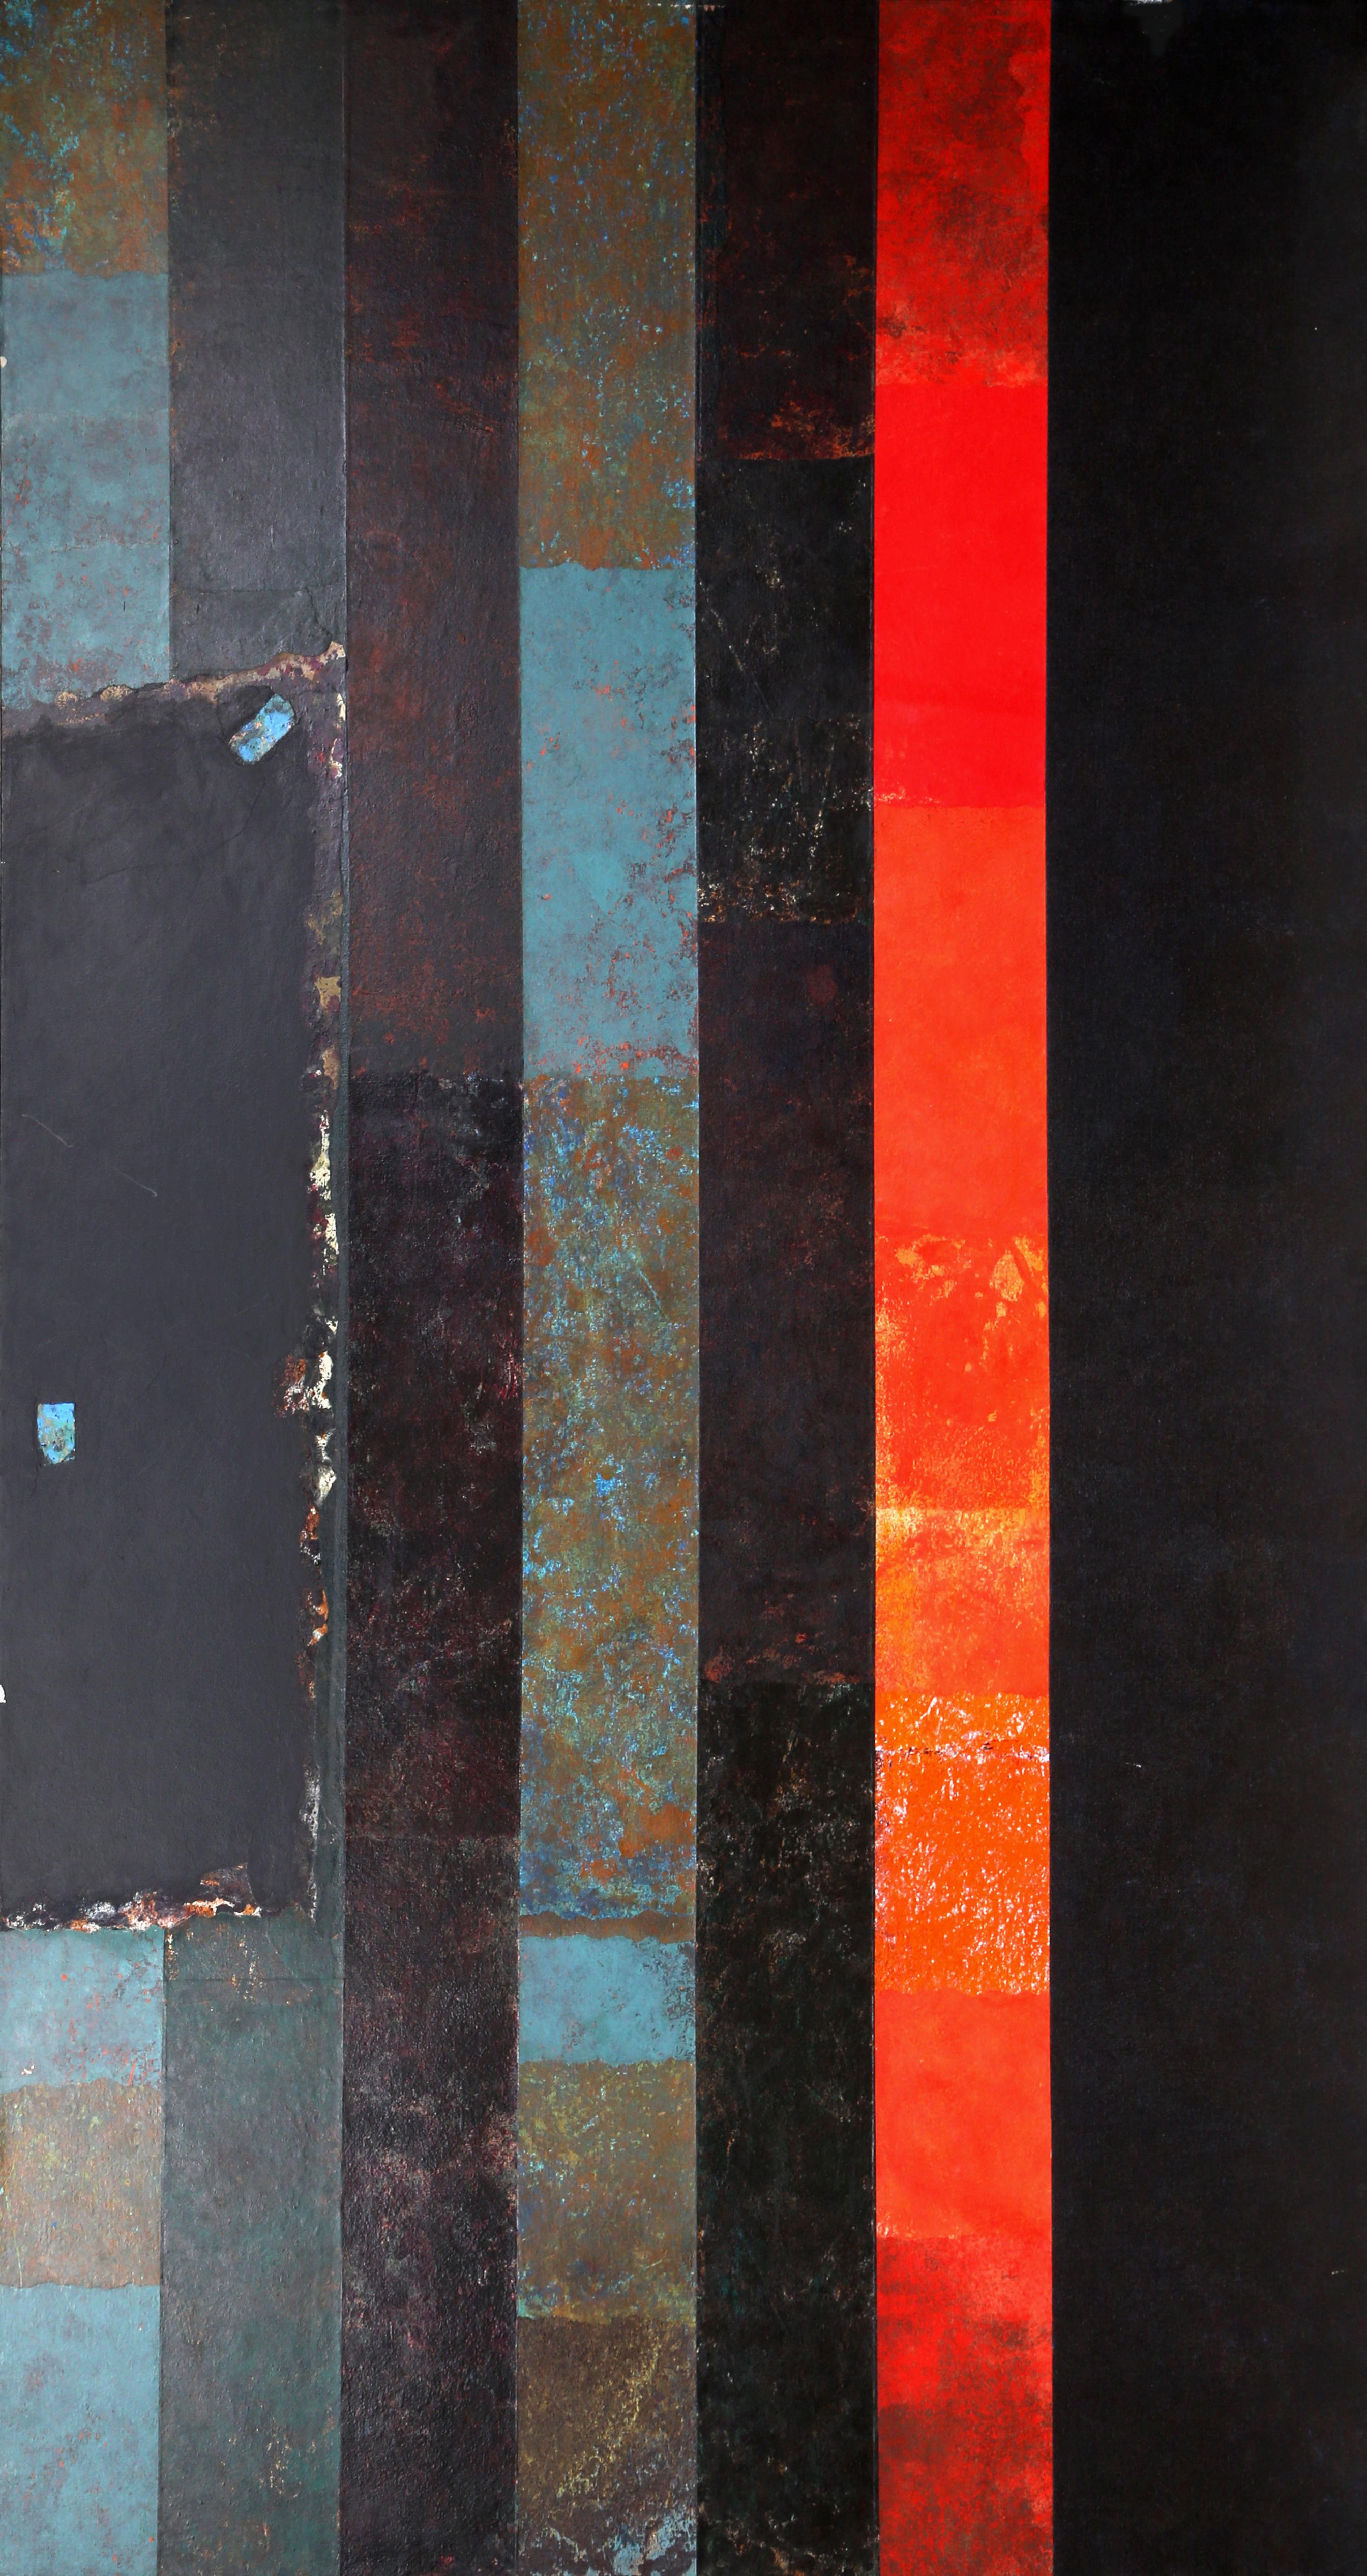 Künstler: Dan Teis
Titel: Rote und blaue Streifen auf Schwarz
Datum: ca. 1977
Acryl auf Leinwand (unsigniert)
Größe: 72 x 40 Zoll (182,88 x 101,6 cm)